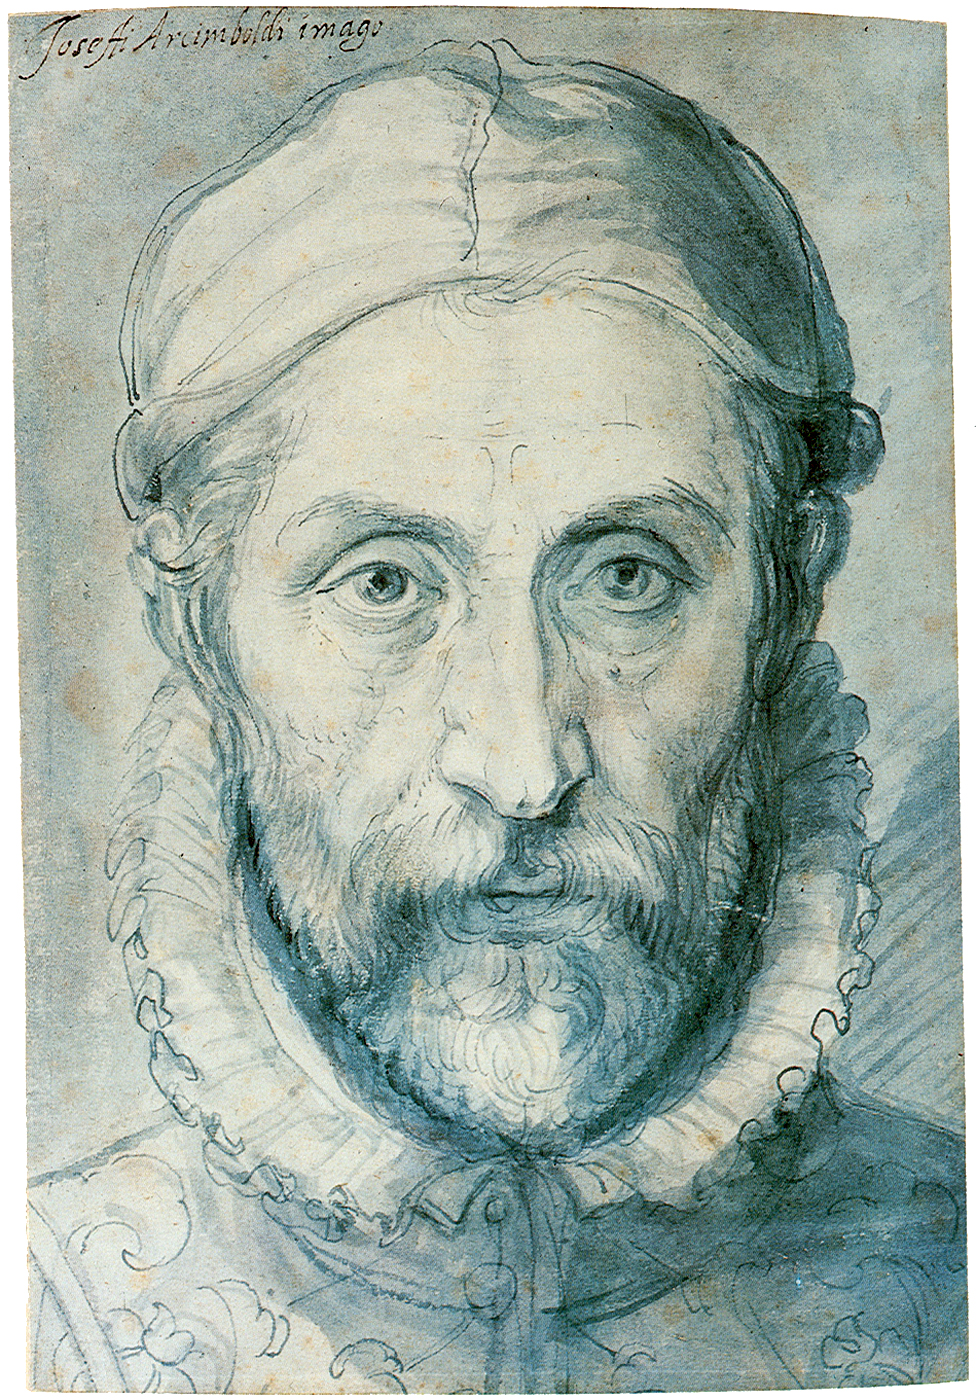 Giuseppe Arcimboldo - 1526/7 - July 11, 1593